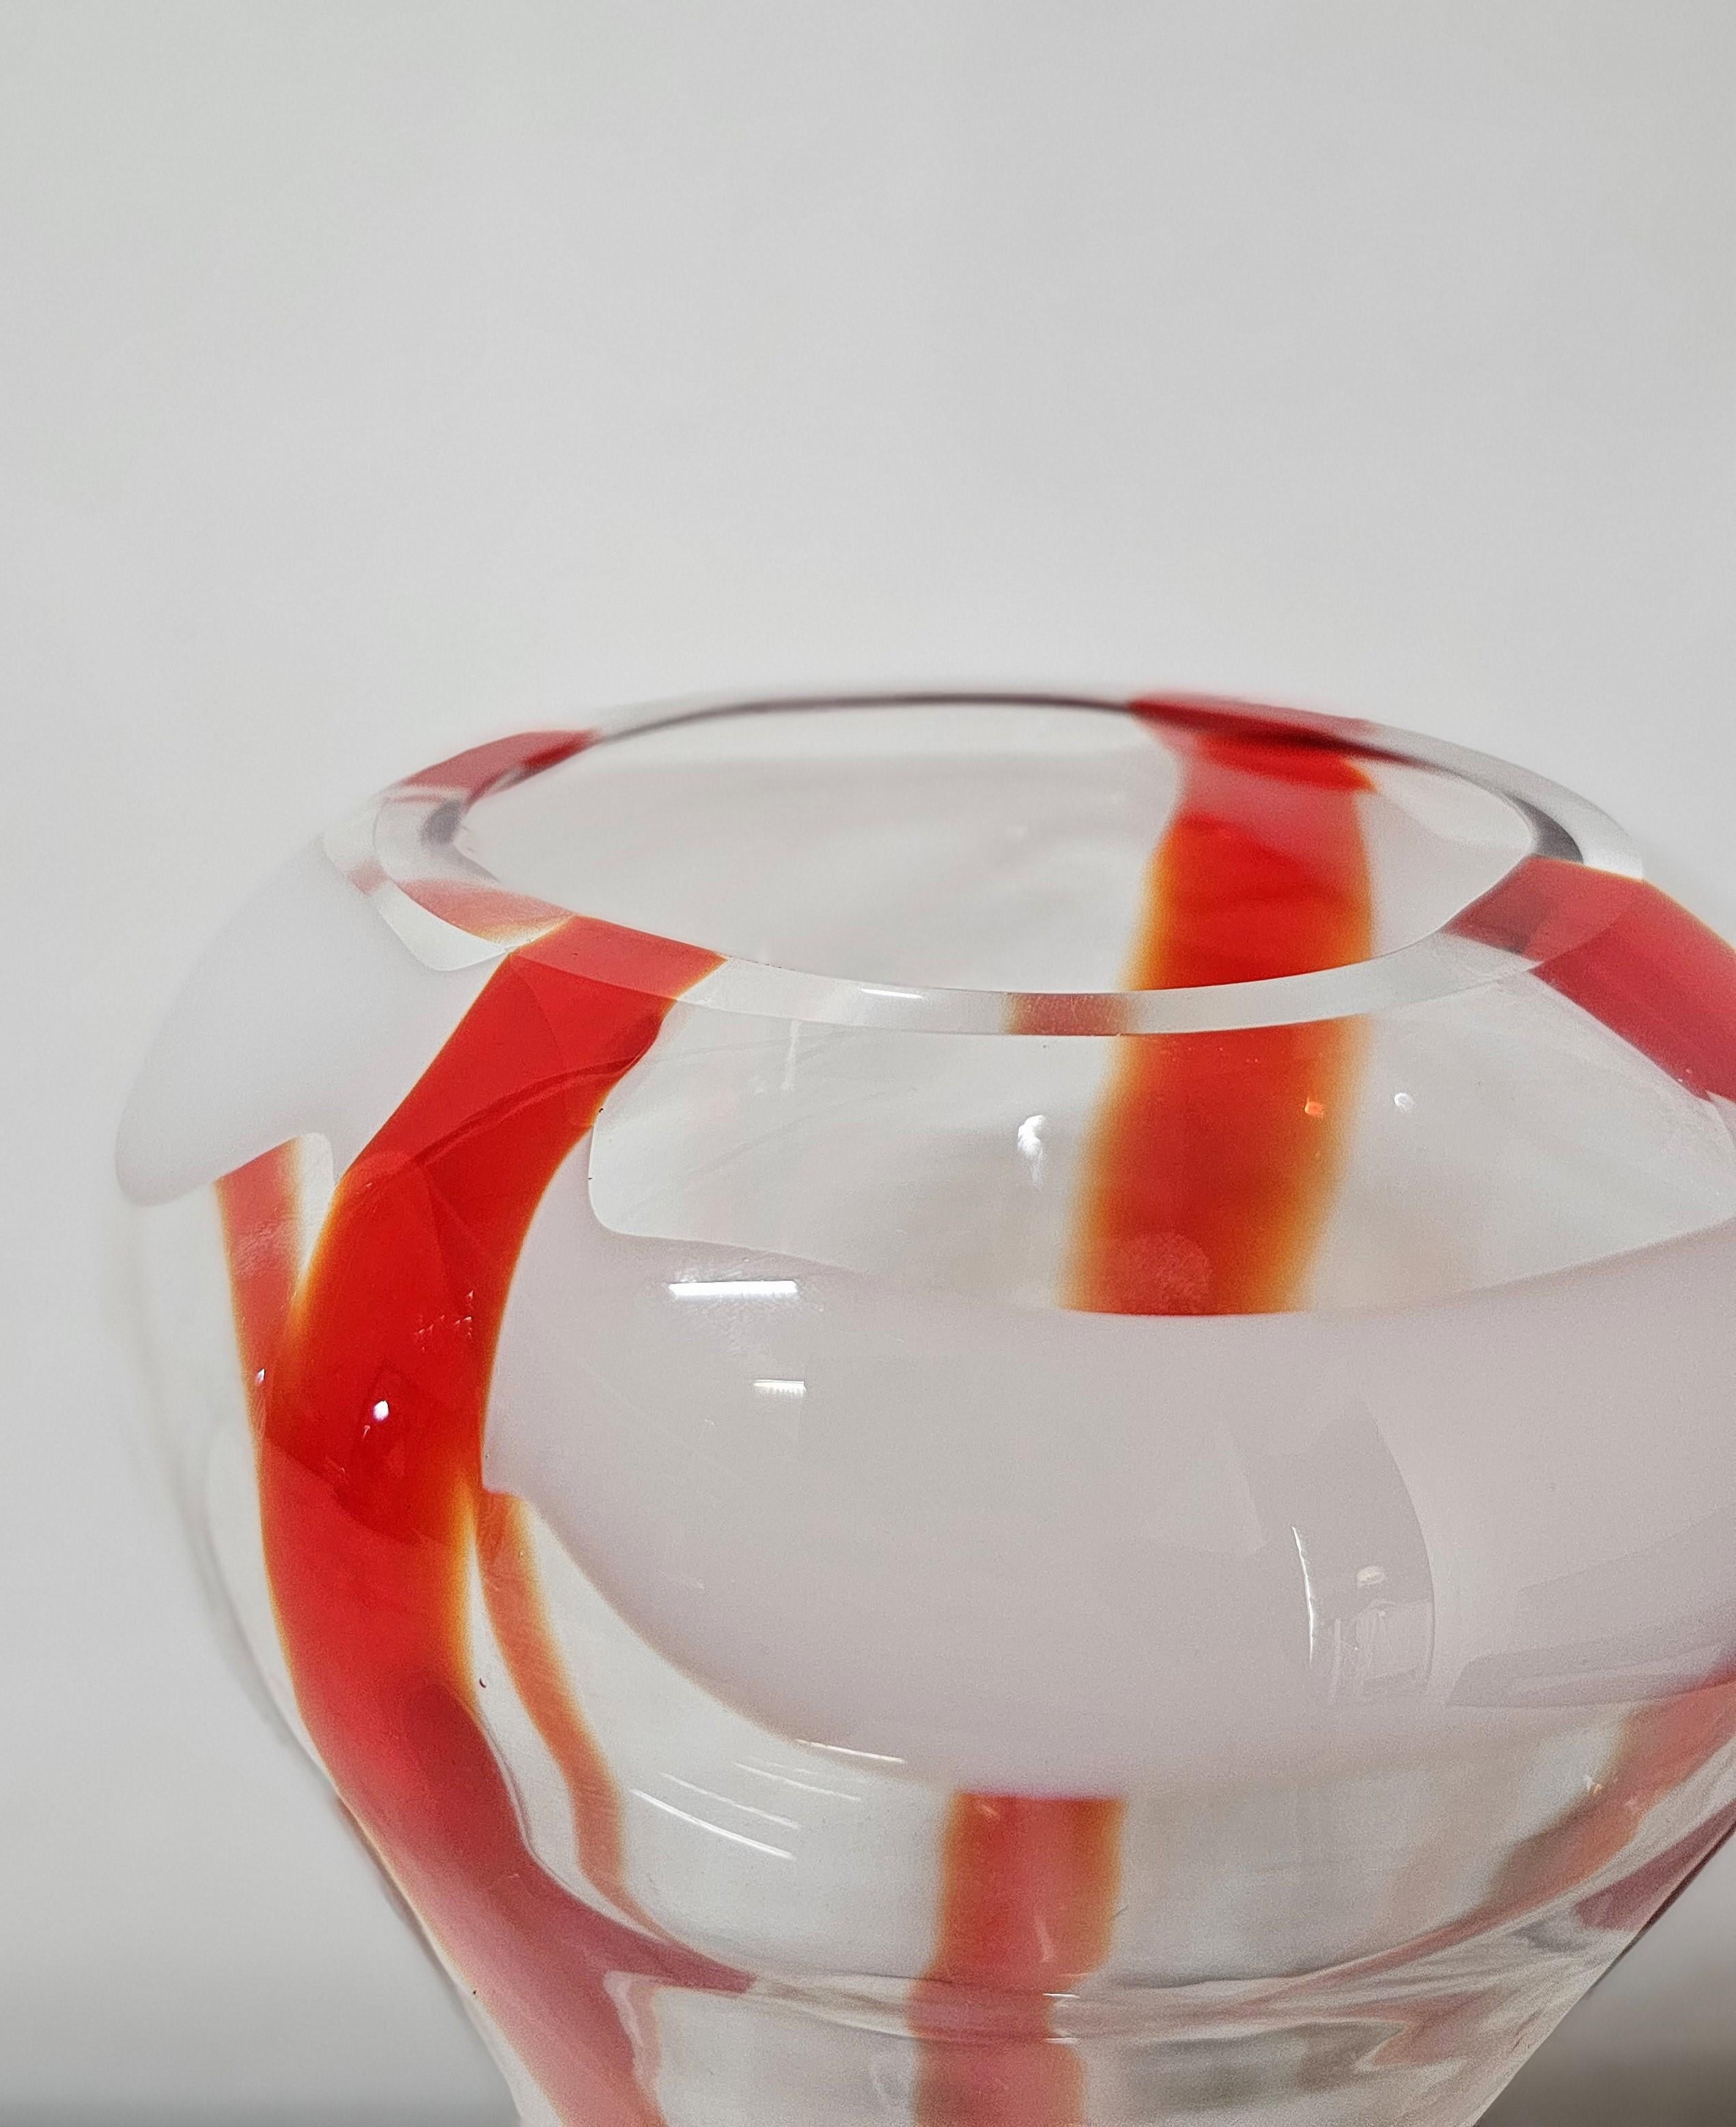 Decorative Object Vase Guzzini Murano Glass Midcentury Italian Design 1970s For Sale 2